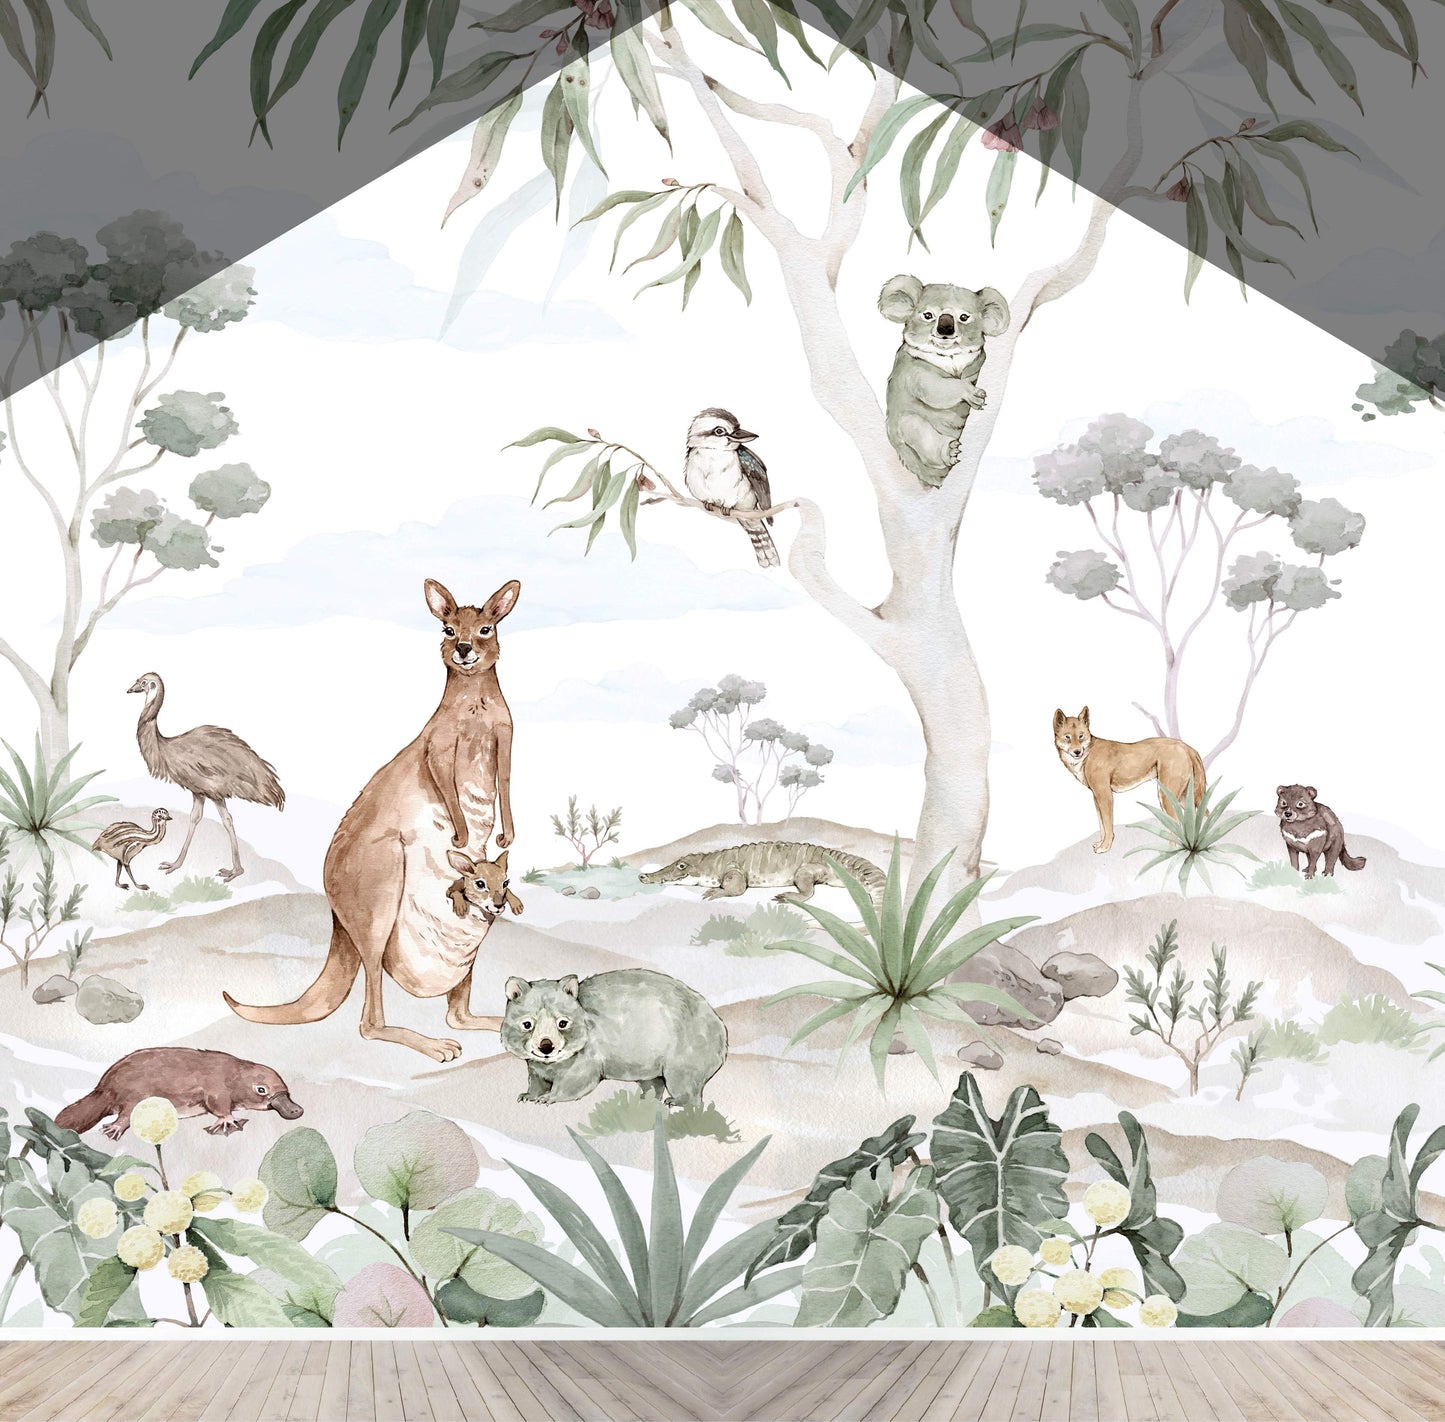 Custom Australia Animal Mural | H373CM X W406CM - Munks and Me Wallpaper